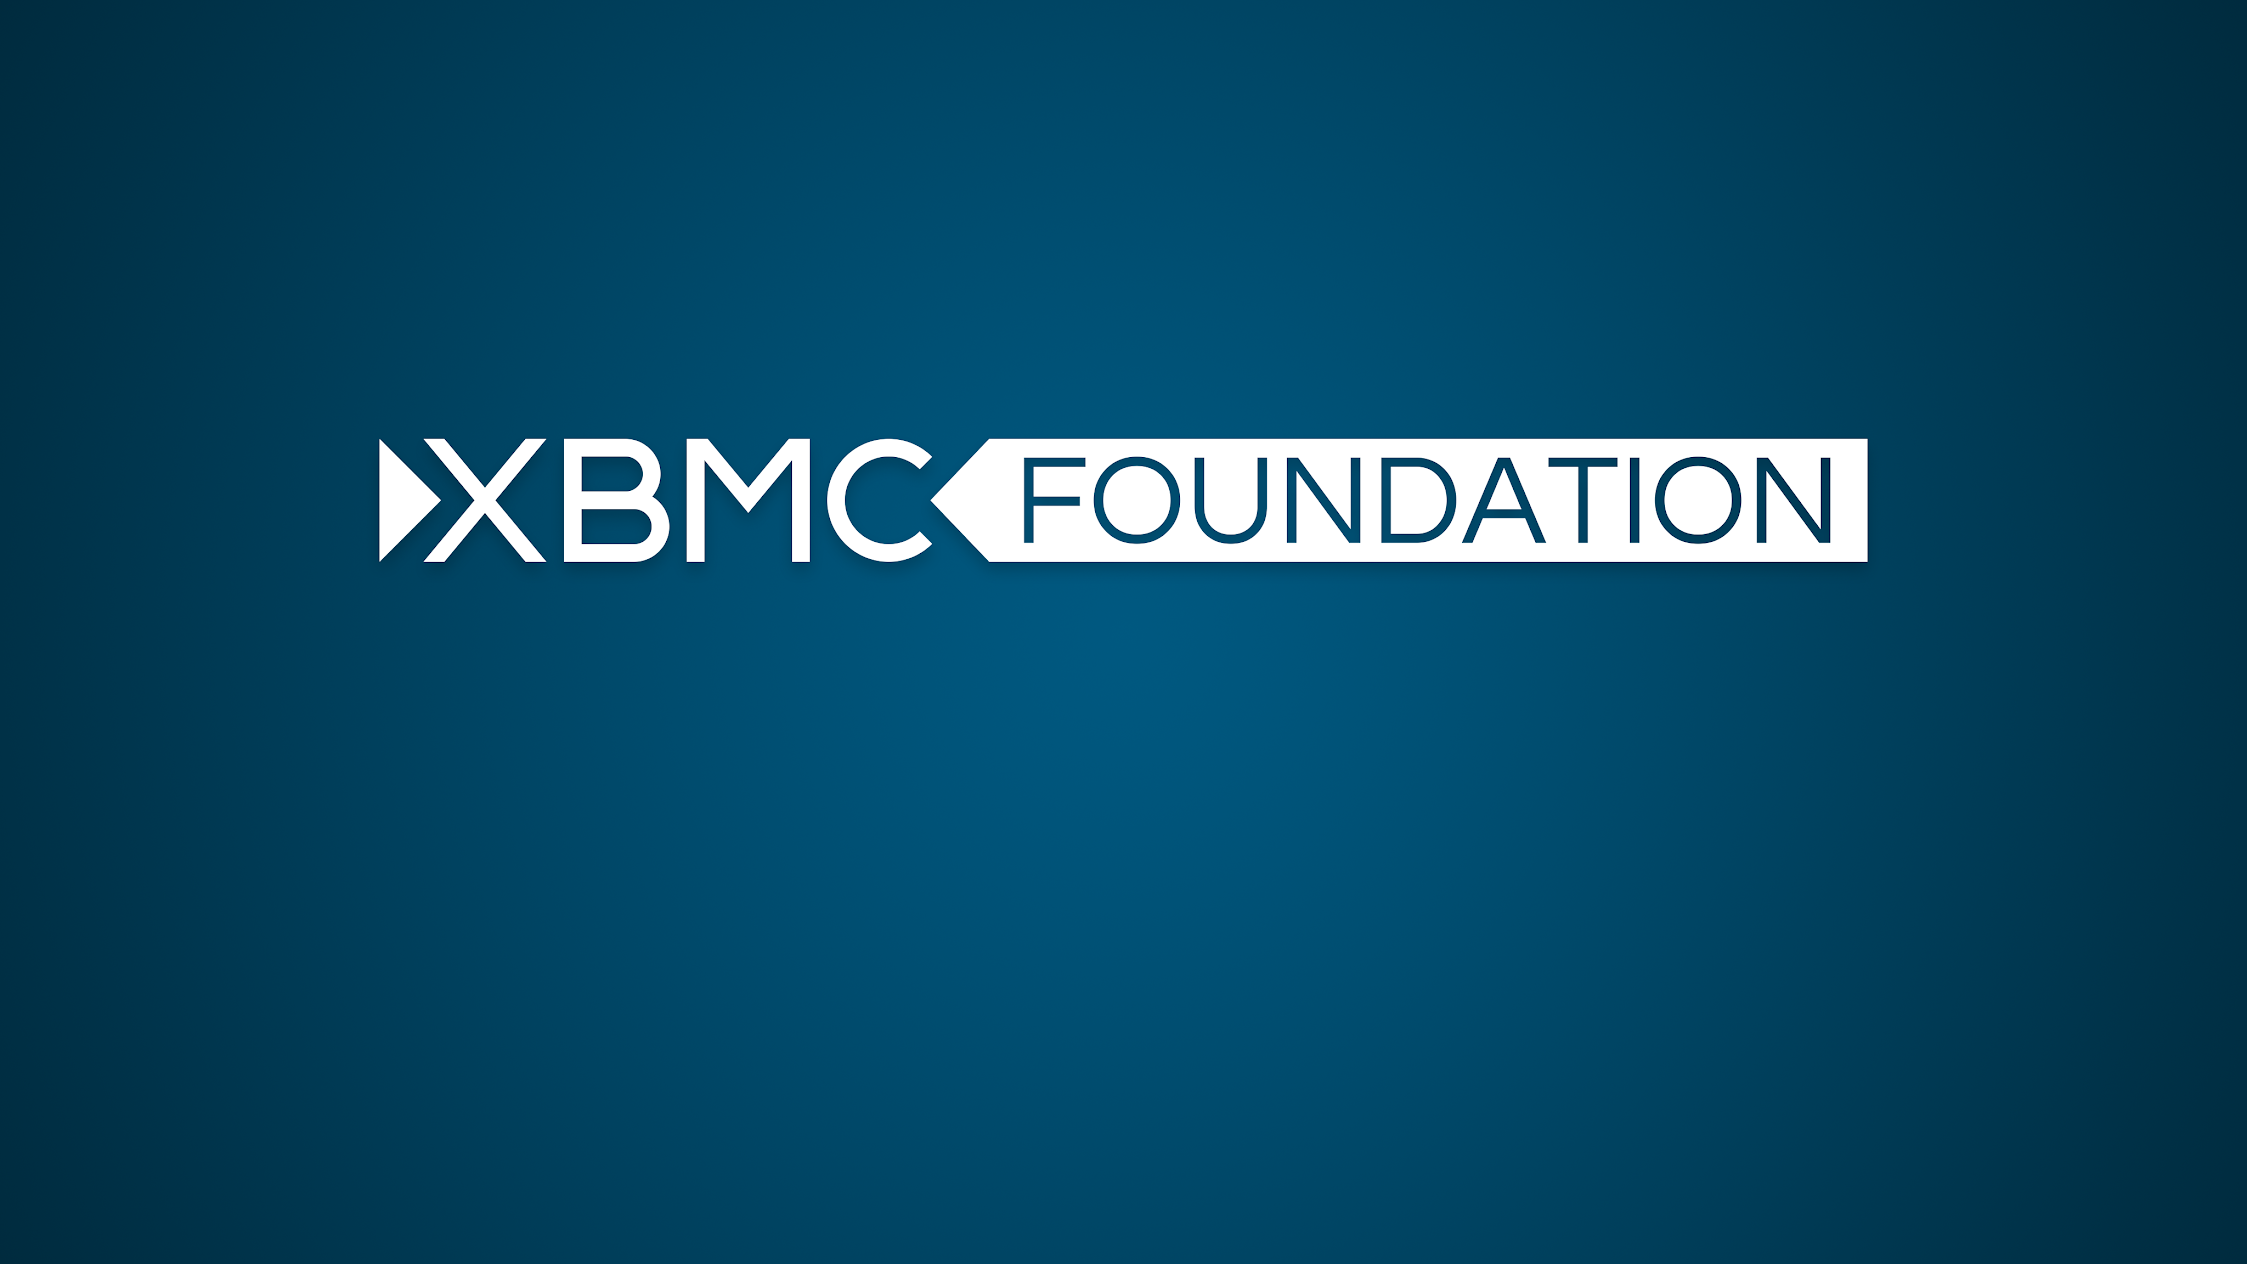 XBMC Foundation